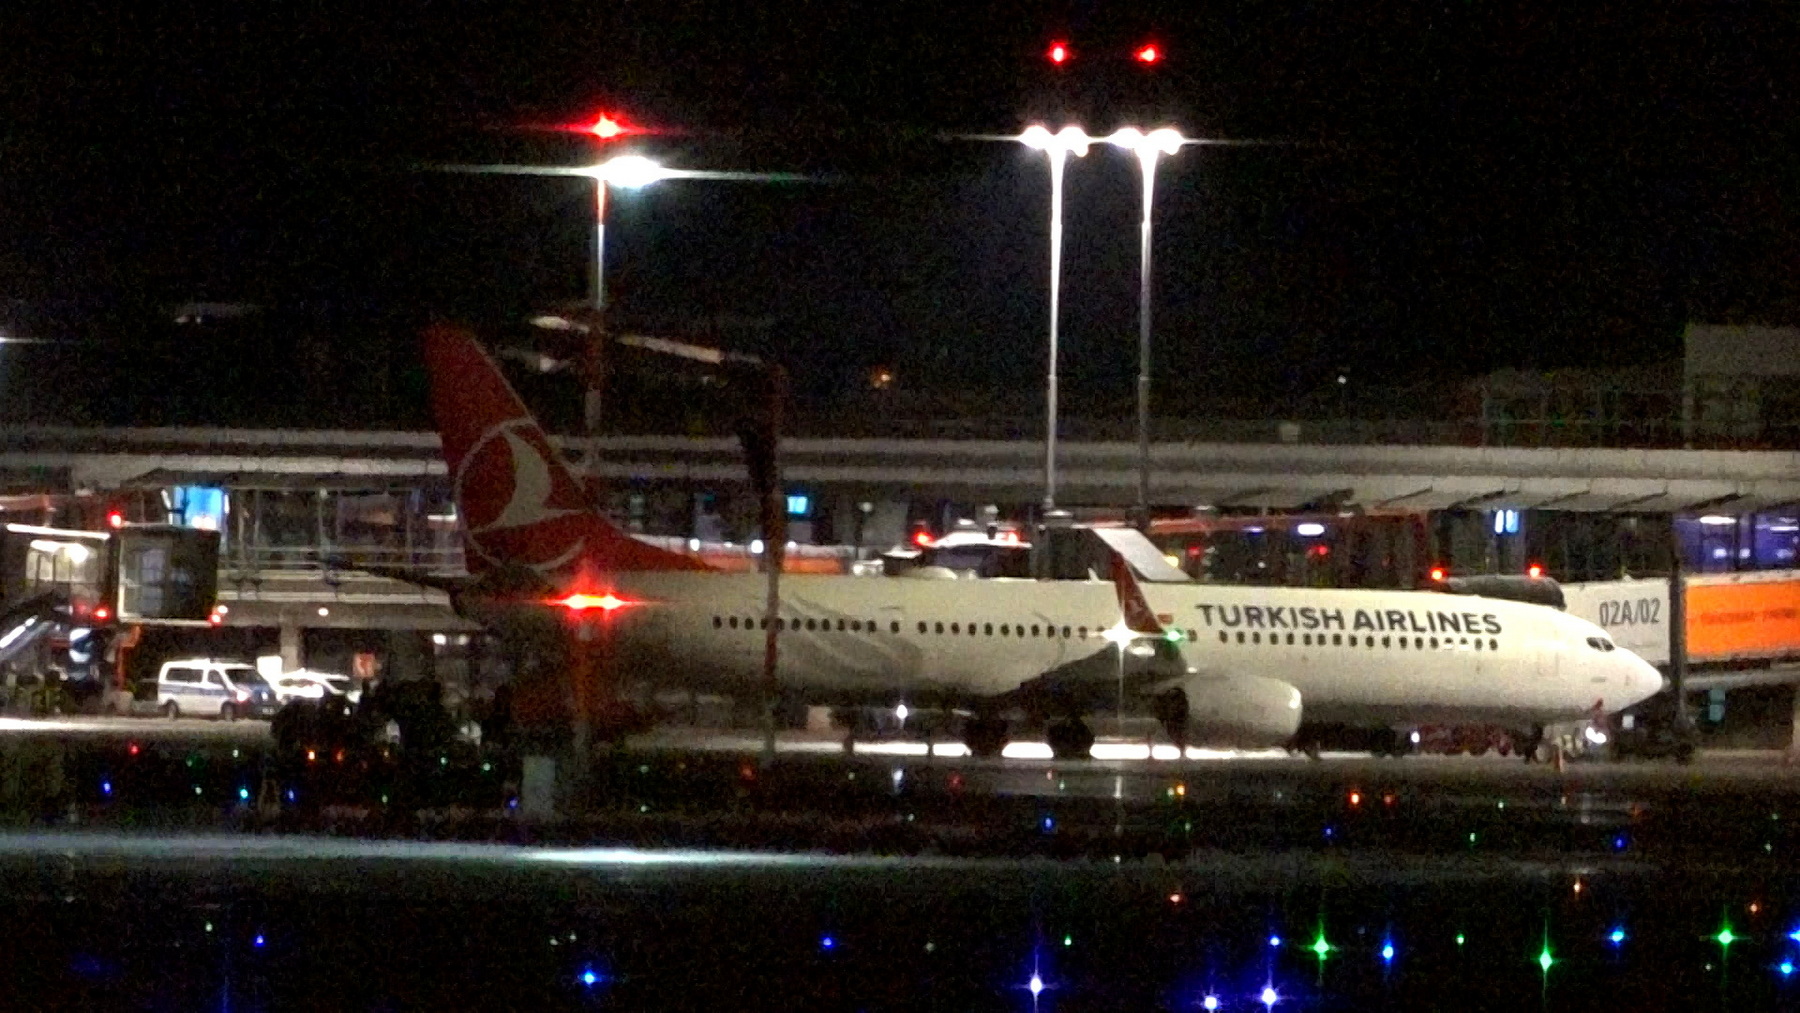 Flughafen Hamburg: eine Maschine der Turkish Airlines, hinten der Wagen des Geiselnehmers